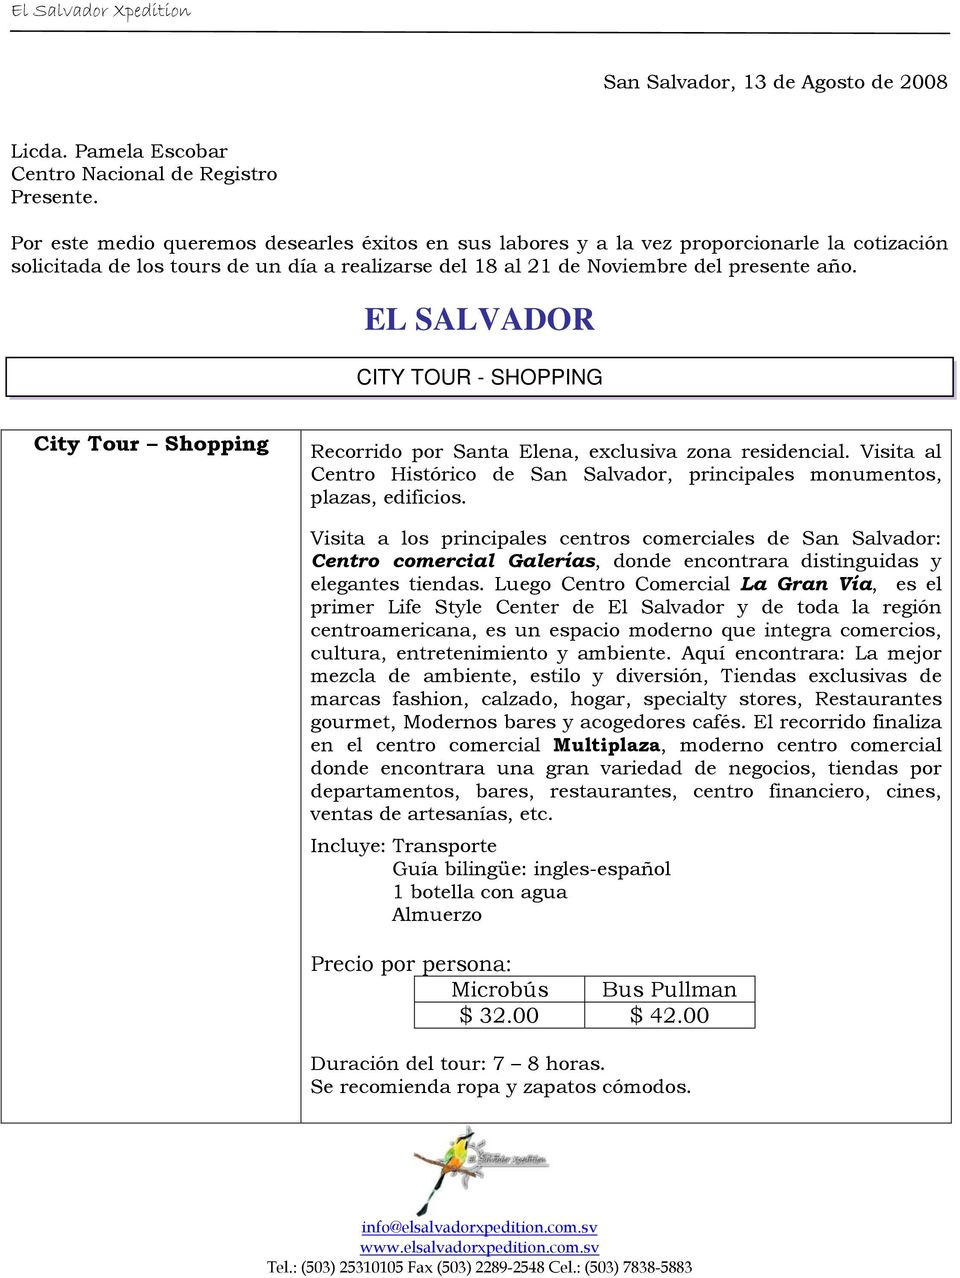 EL SALVADOR CITY TOUR - SHOPPING City Tour Shopping Recorrido por Santa Elena, exclusiva zona residencial. Visita al Centro Histórico de San Salvador, principales monumentos, plazas, edificios.